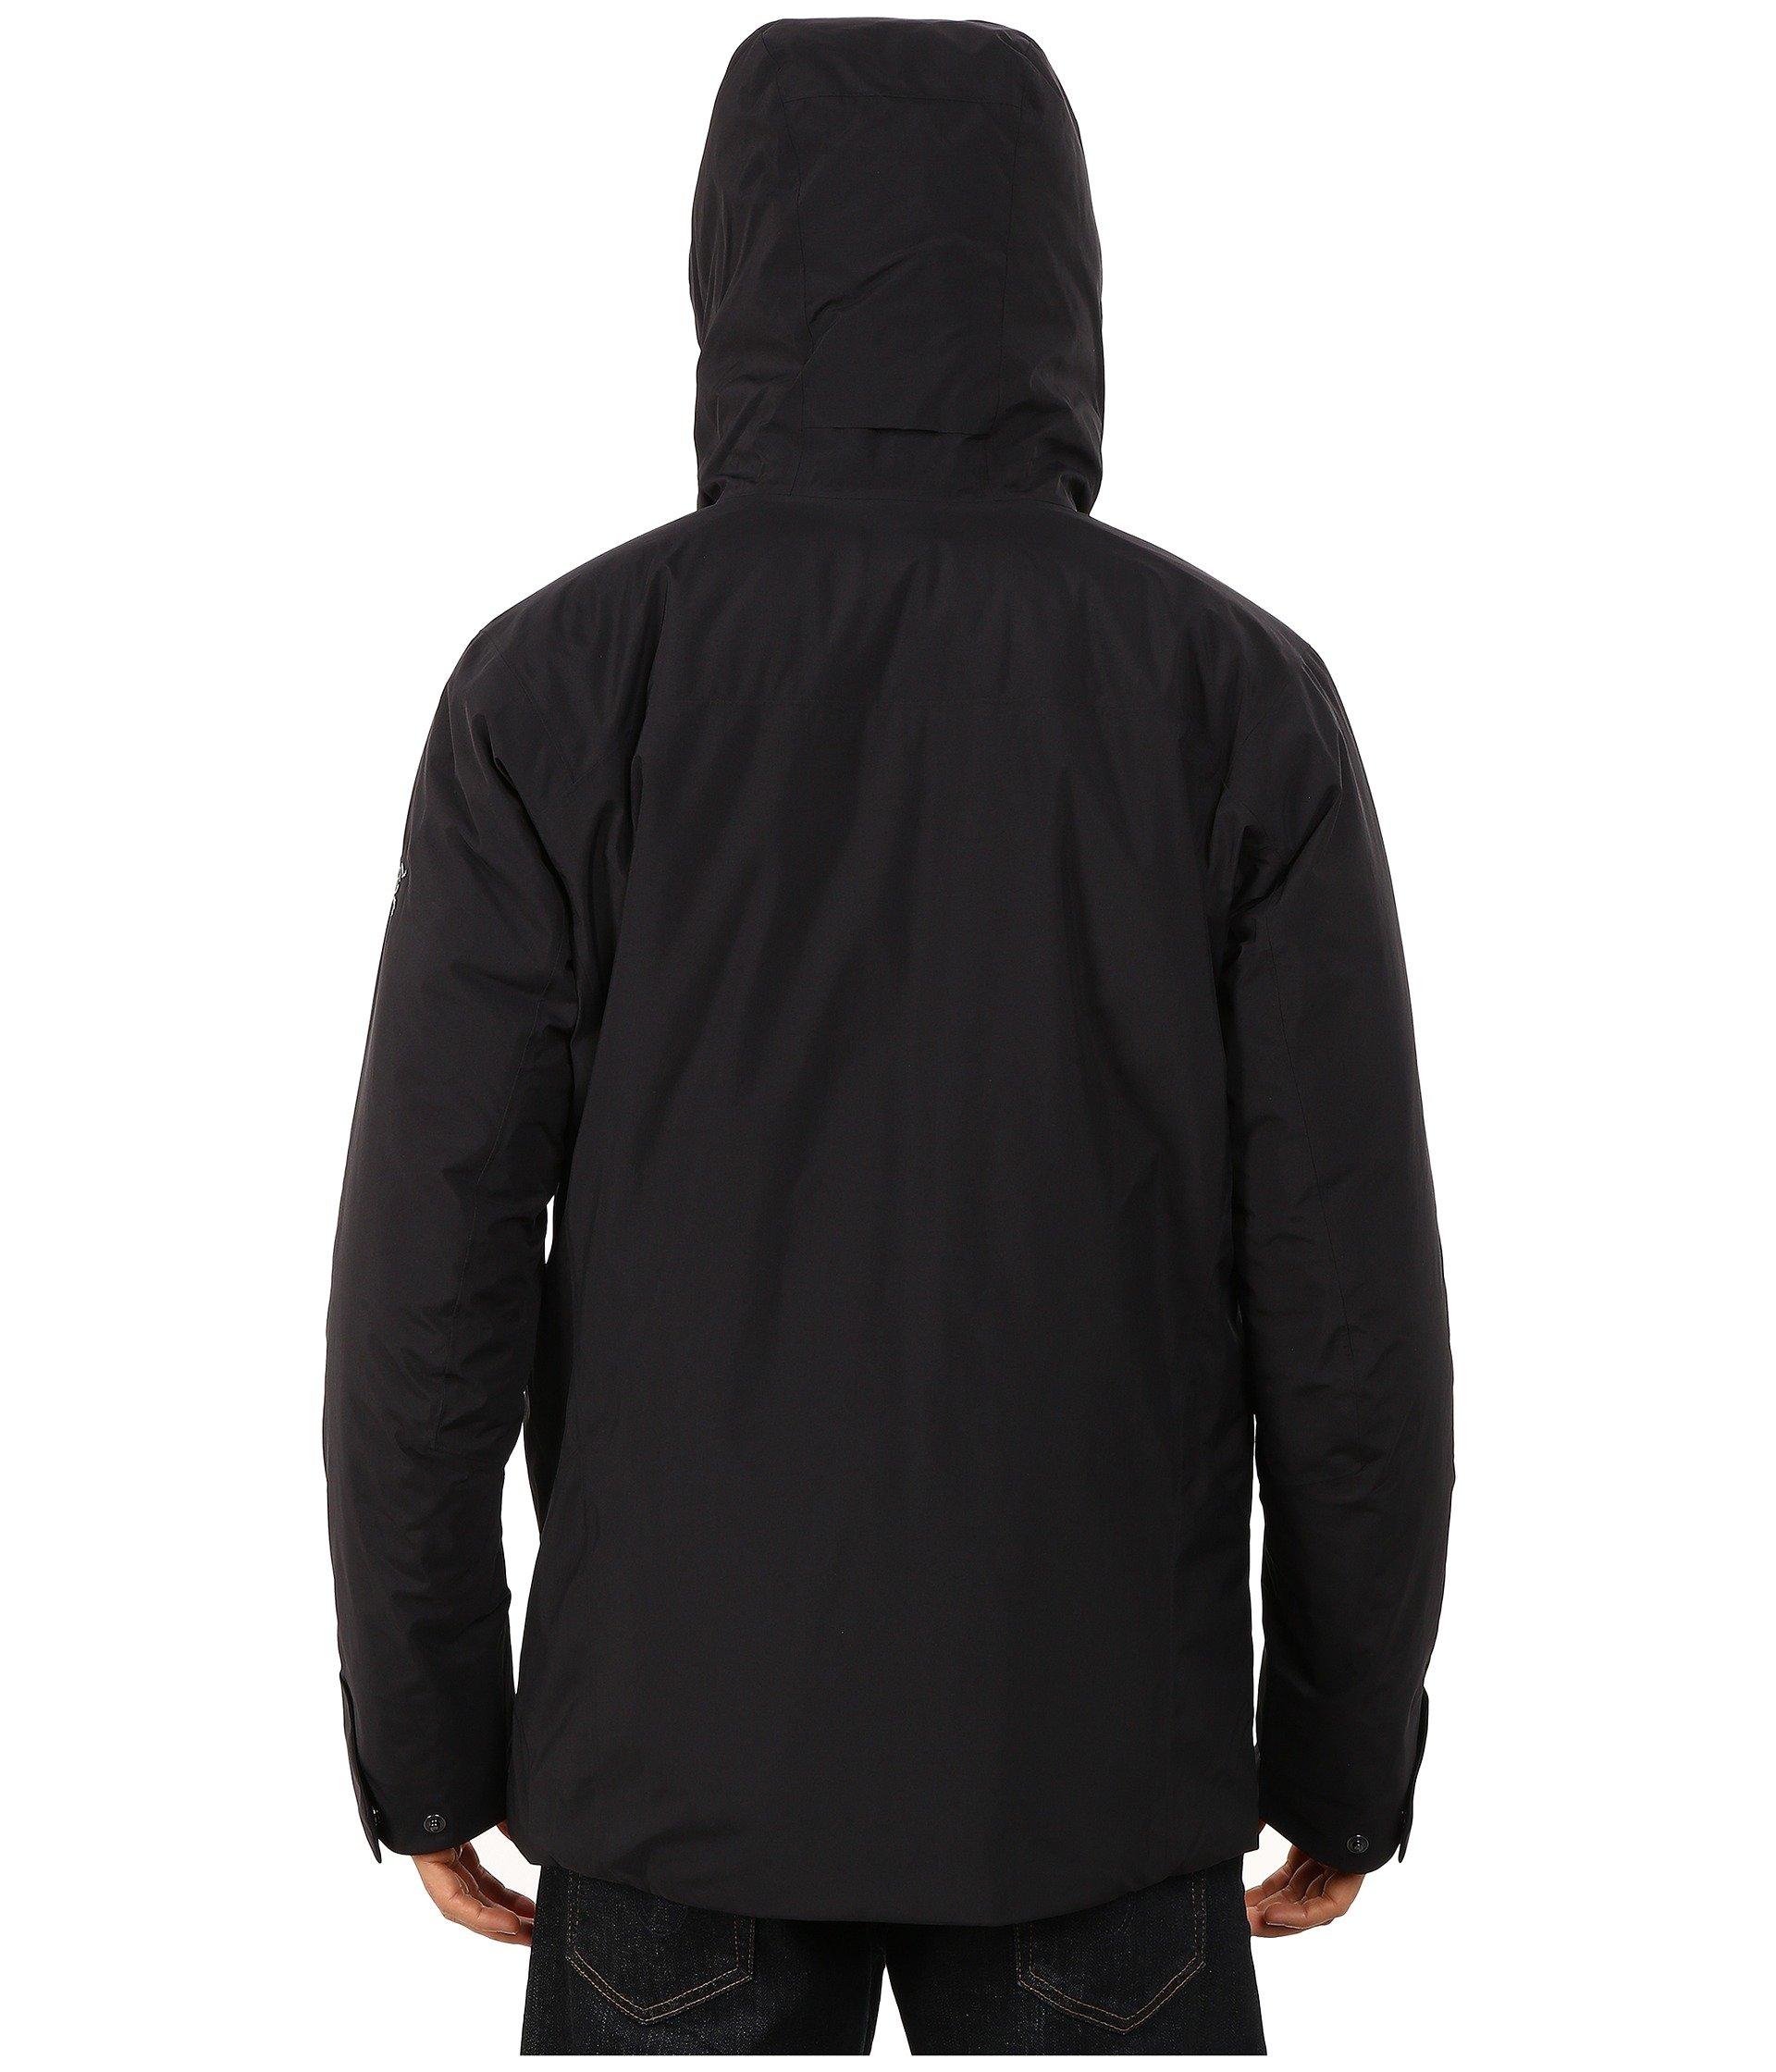 Arc'teryx Synthetic Koda Jacket in Black for Men - Lyst